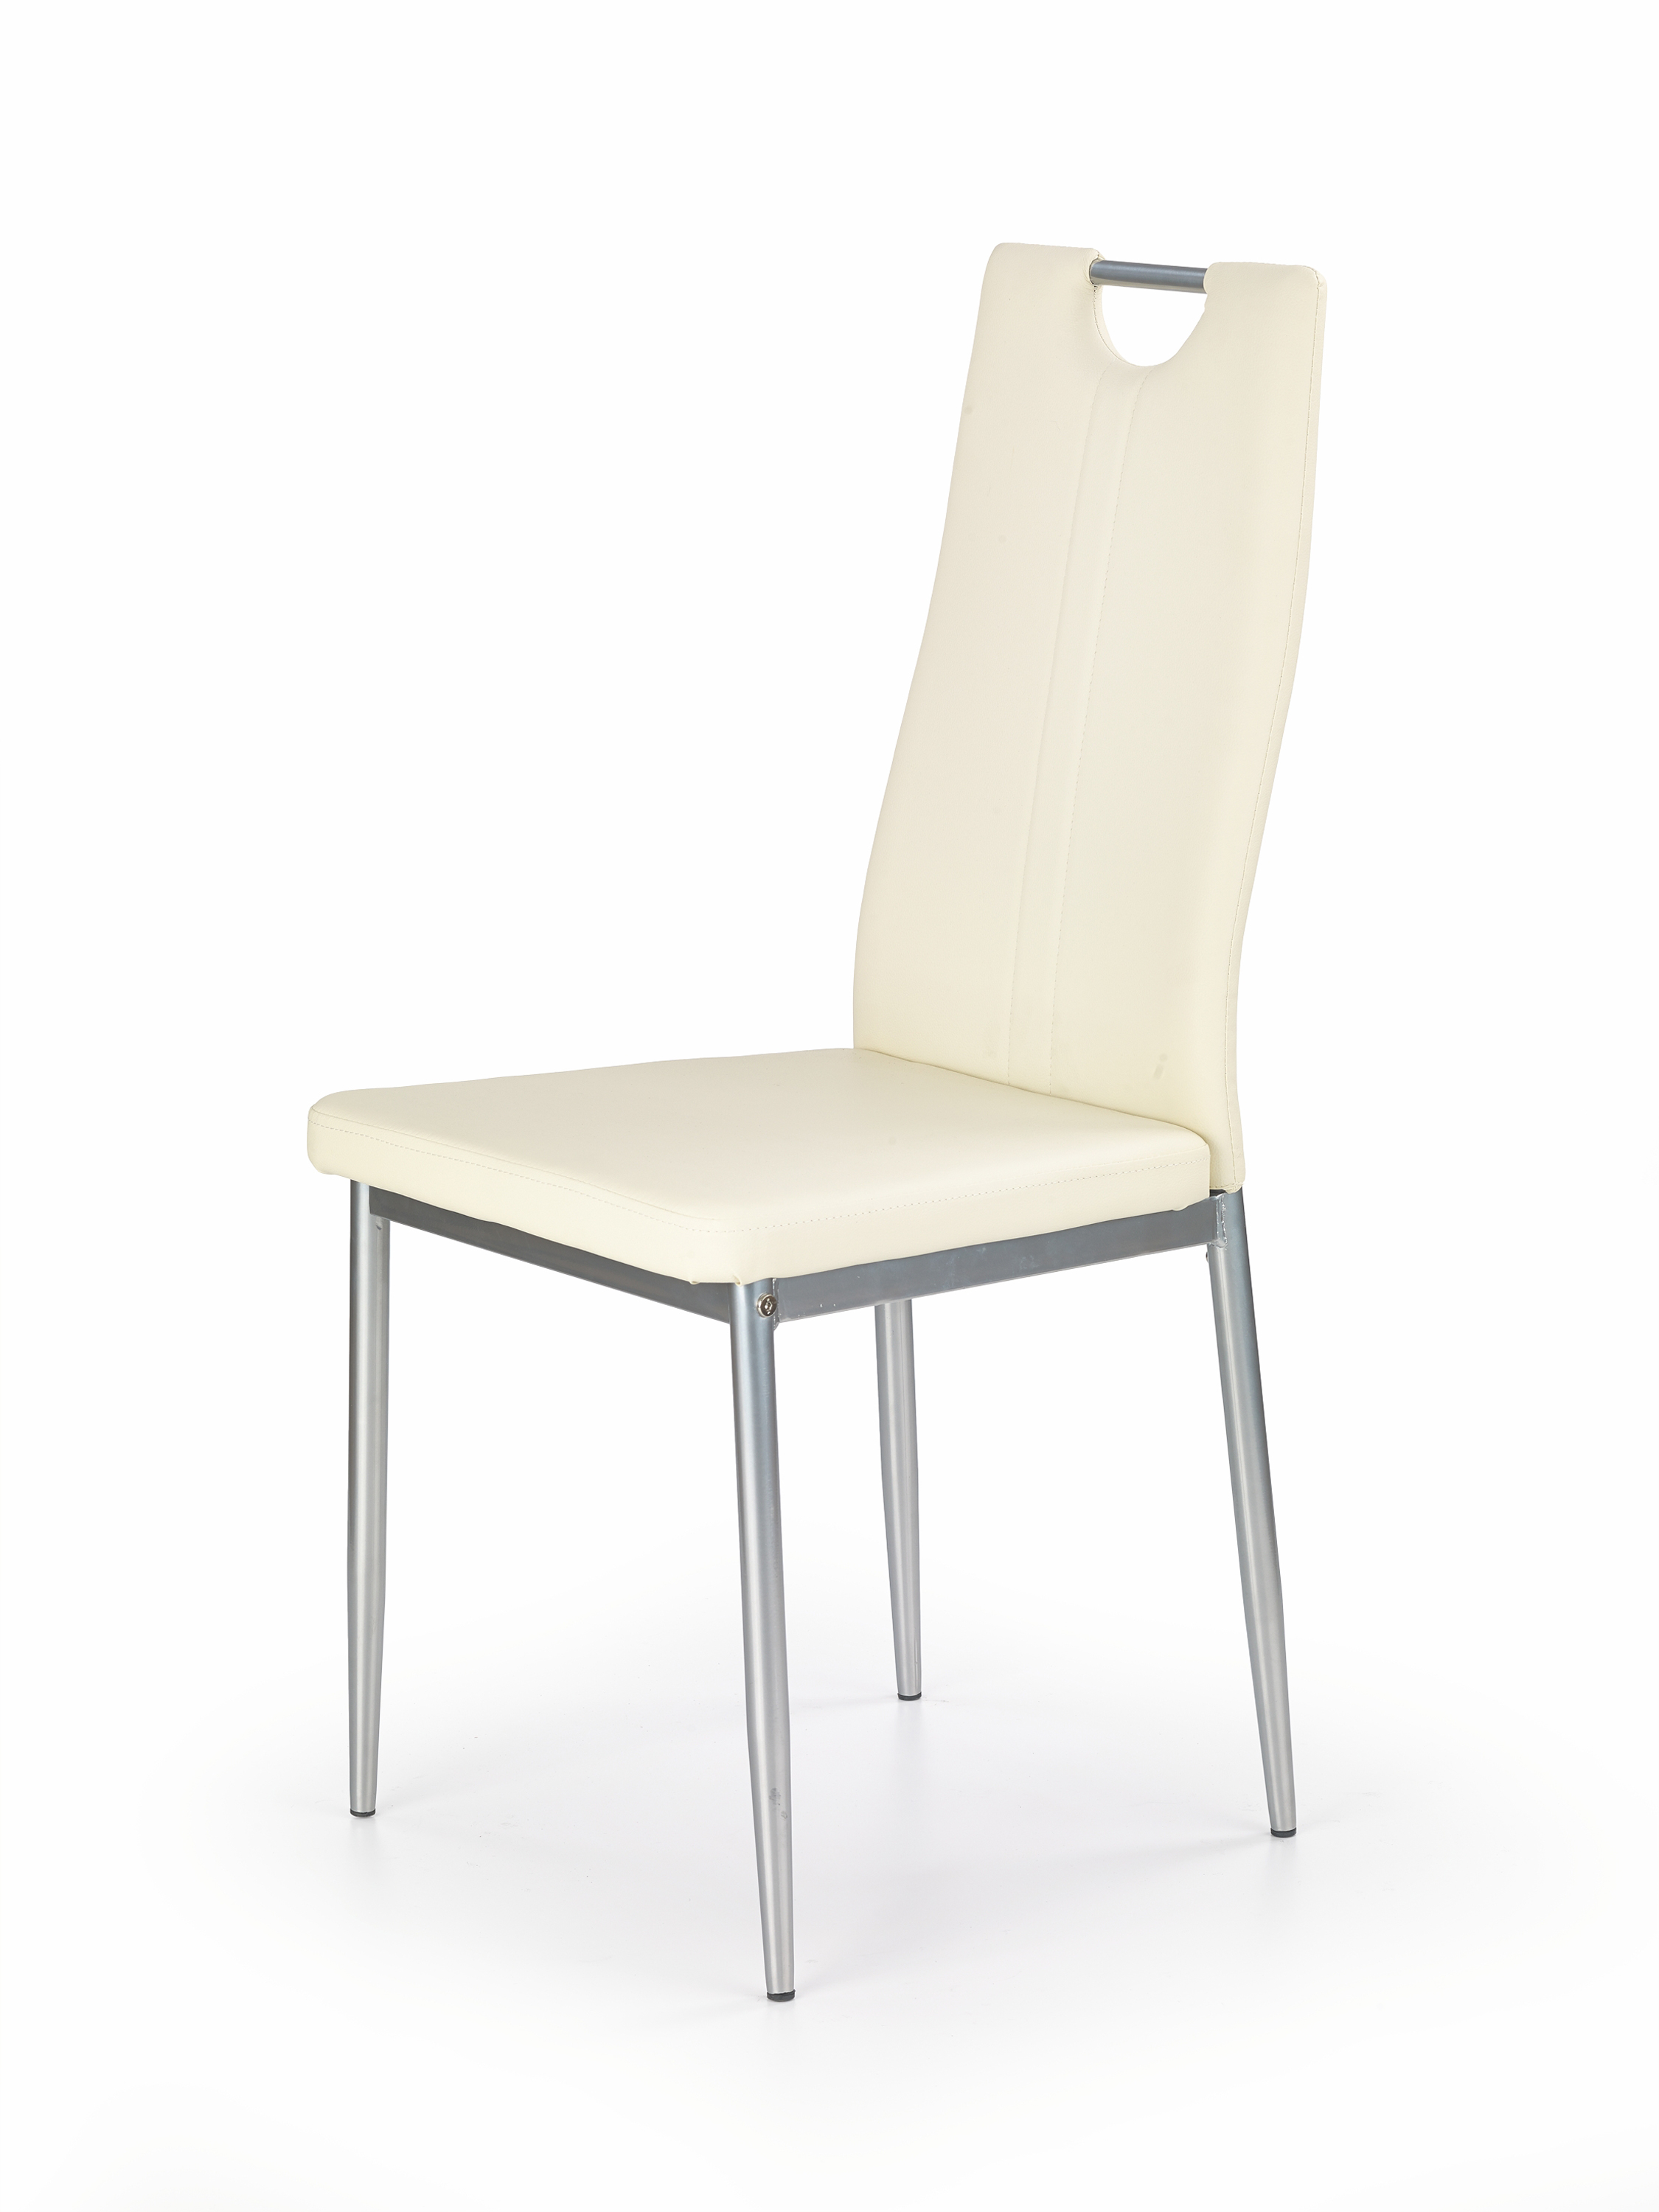 Кухонные стулья от производителя. Стул Halmar k202. Стул Halmar k202 капучино. Стул Halmar k202, кремовый. Стул Halmar k210.